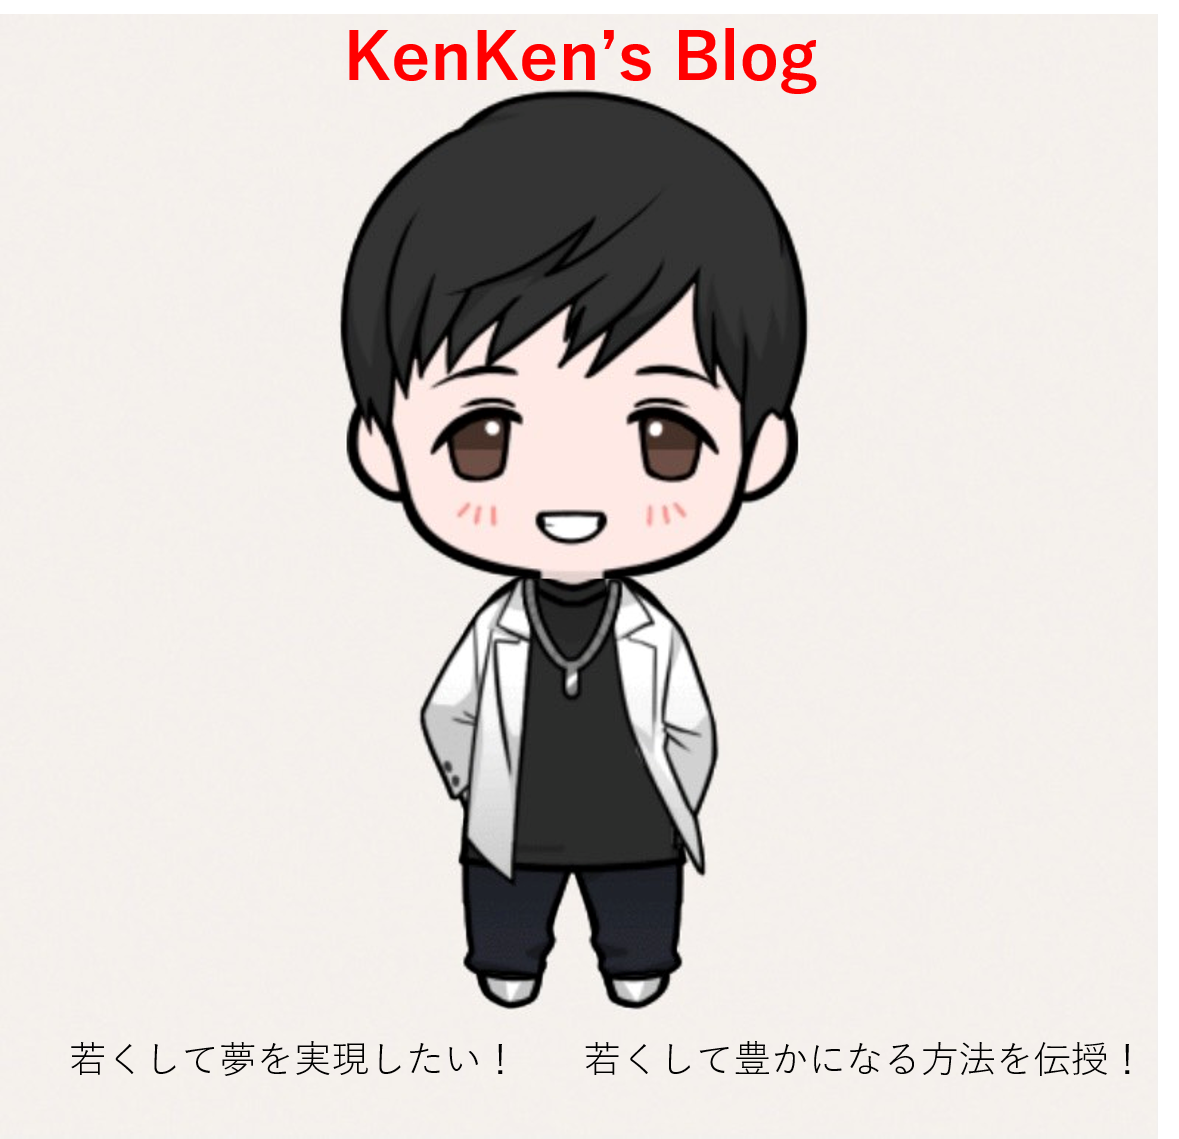 kenken's blog